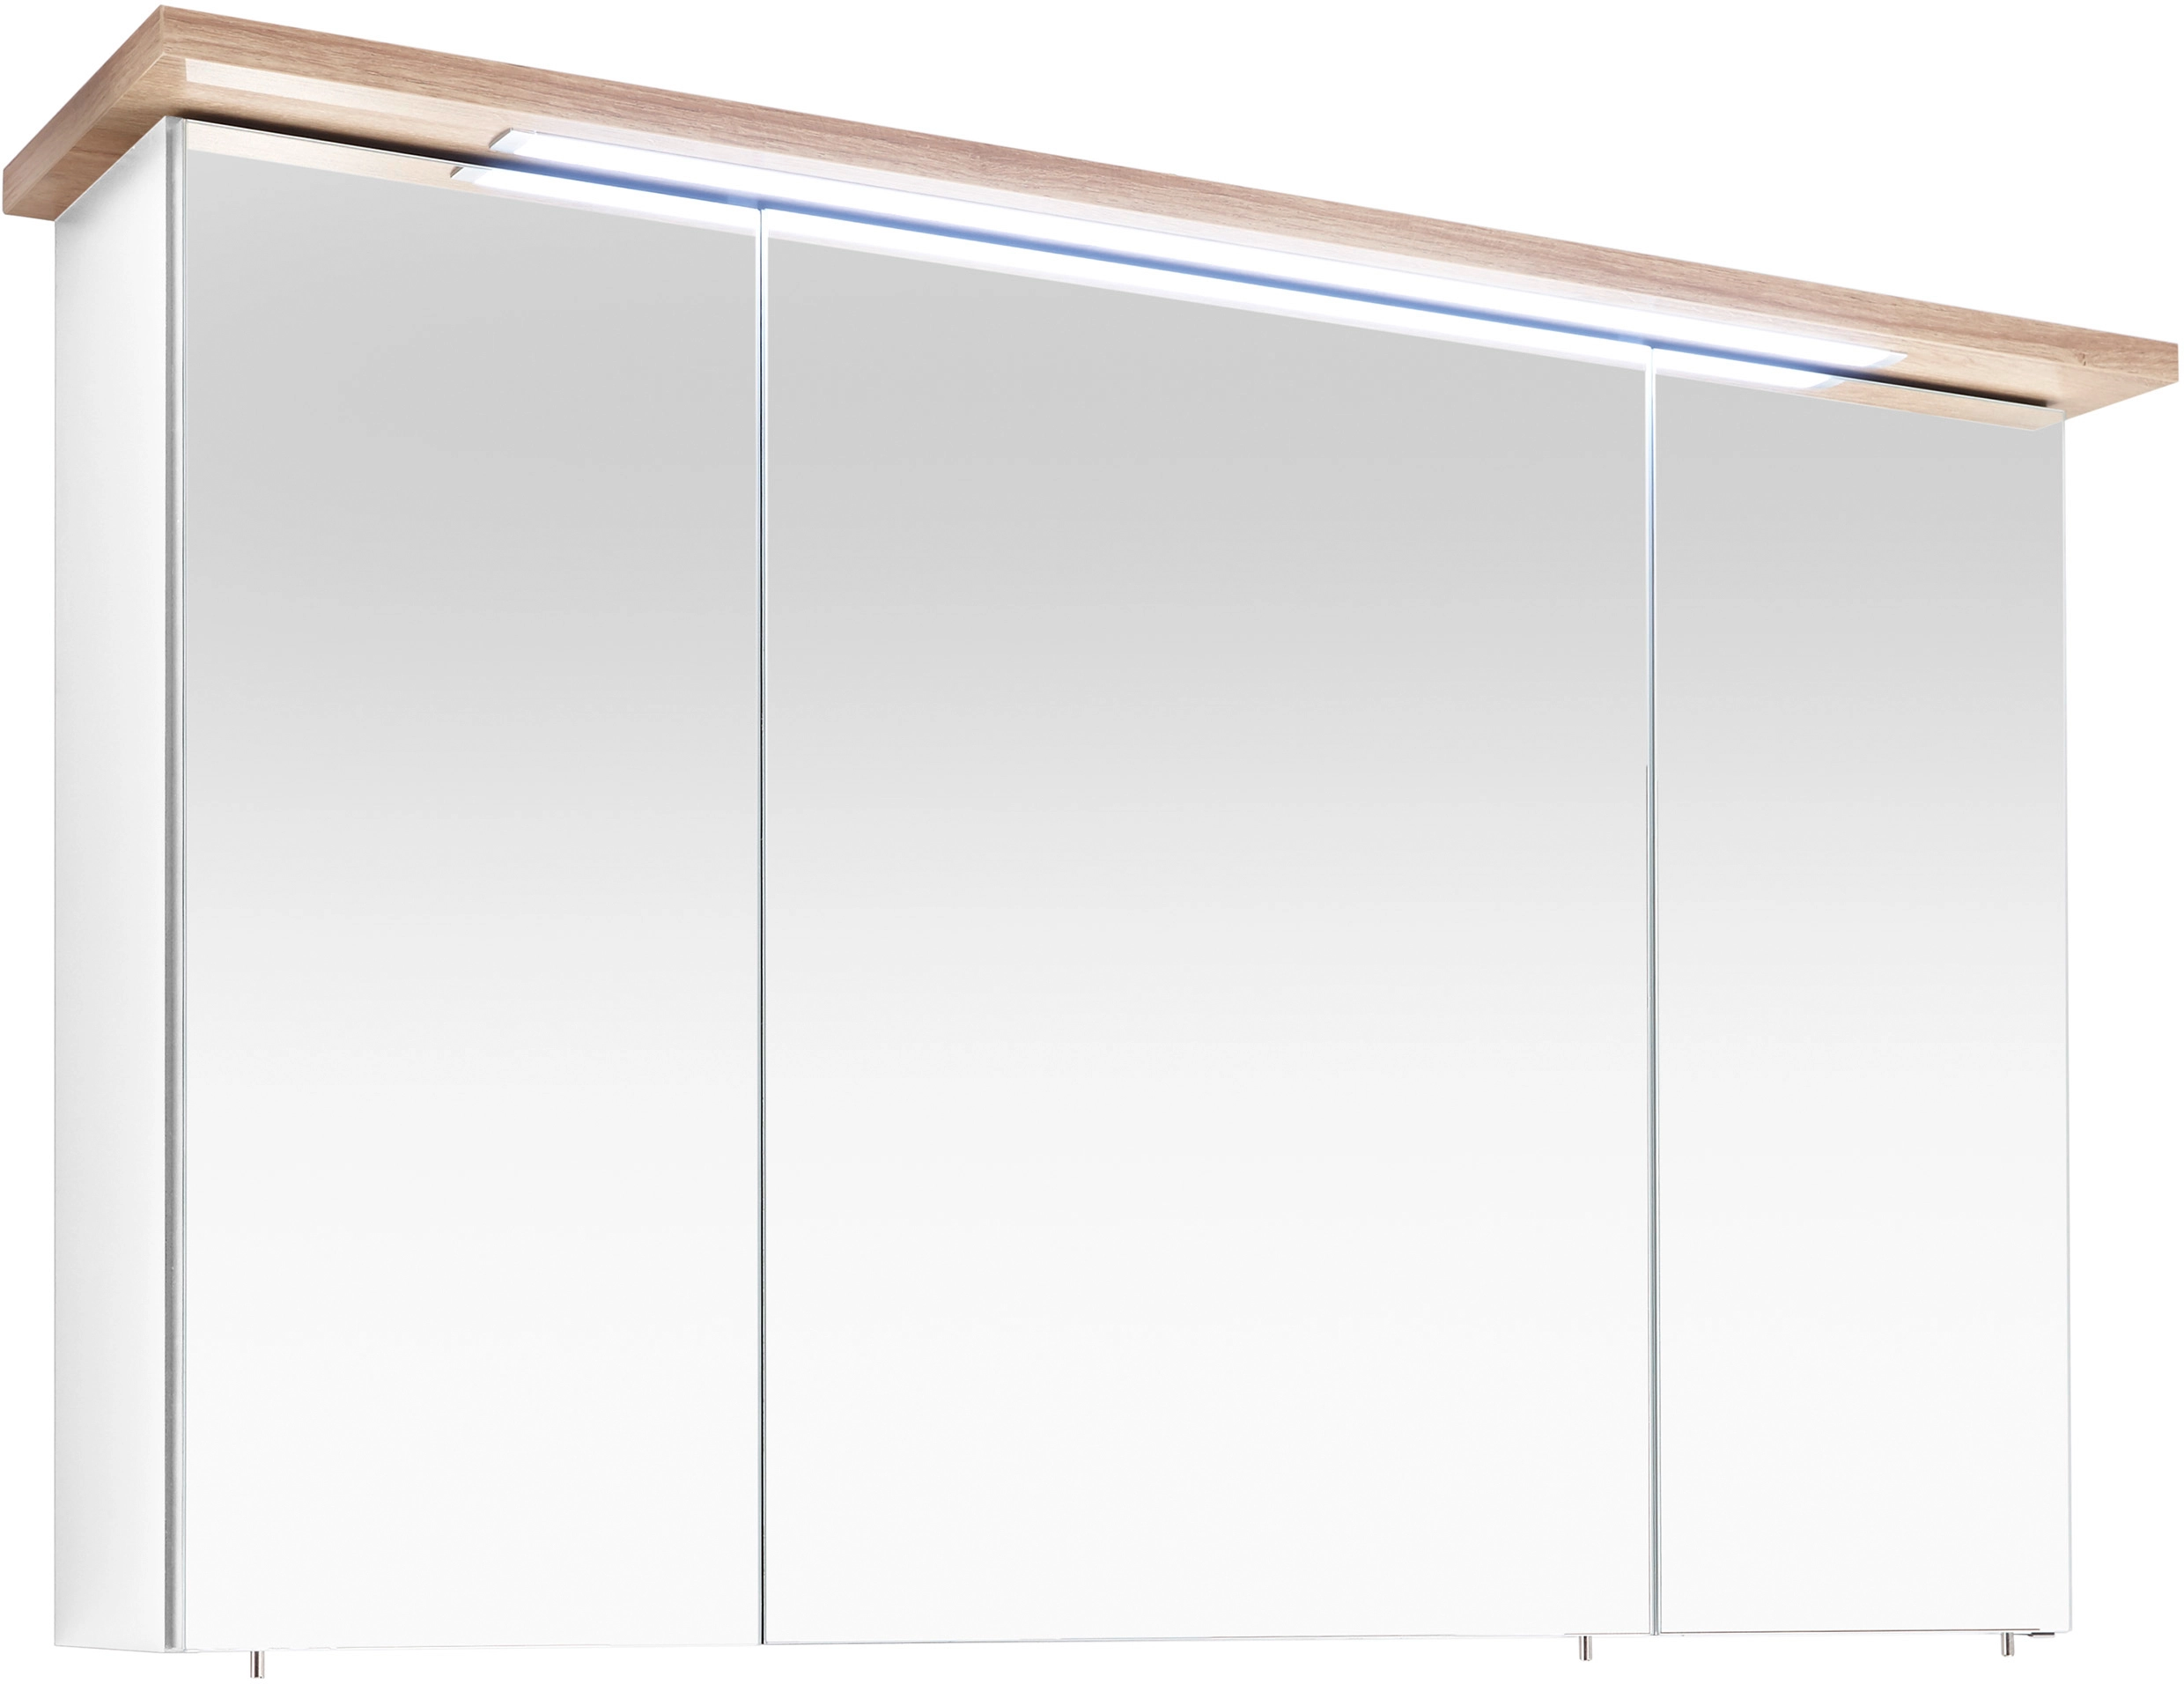 Pelipal Spiegelschrank Kranz Riviera Eiche 115 cm mit Softclose Türen